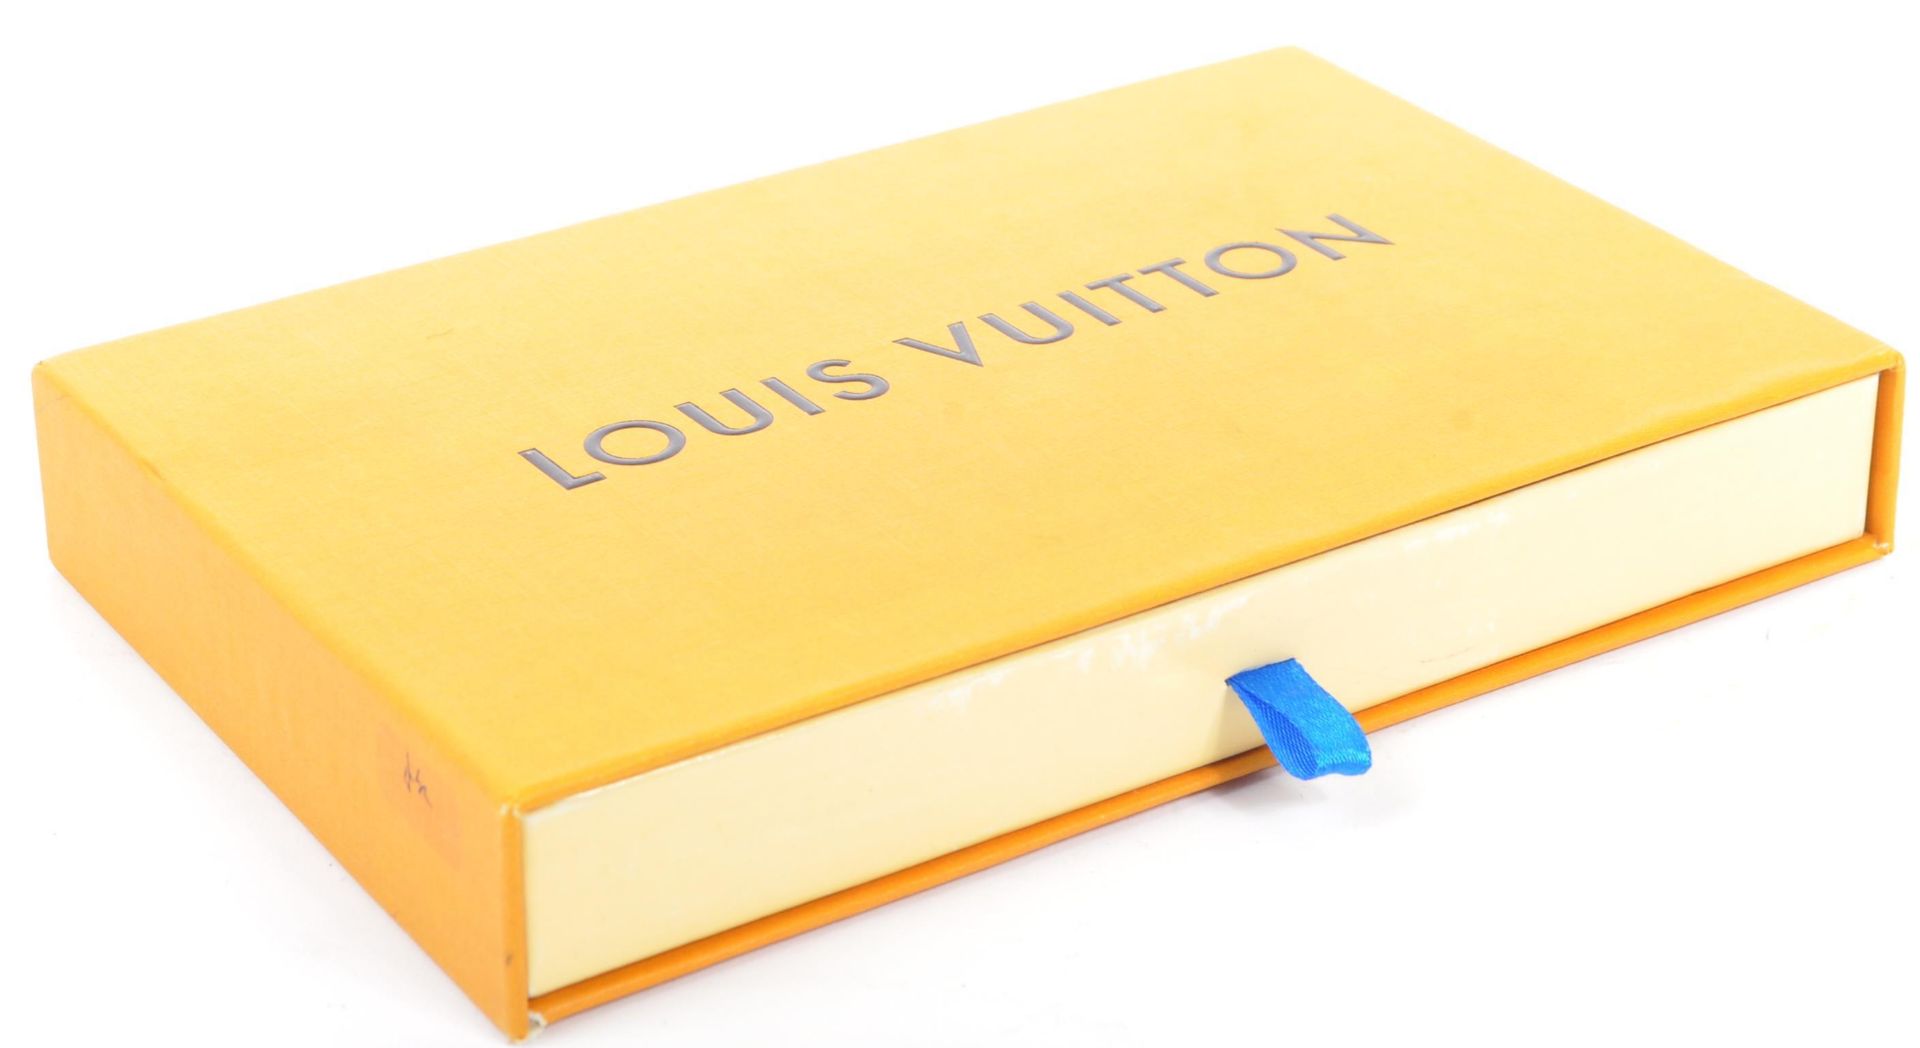 LOUIS VUITTON X SUPREME RED / GOLD IPHONE 7 CASE IN BOX - Bild 2 aus 7